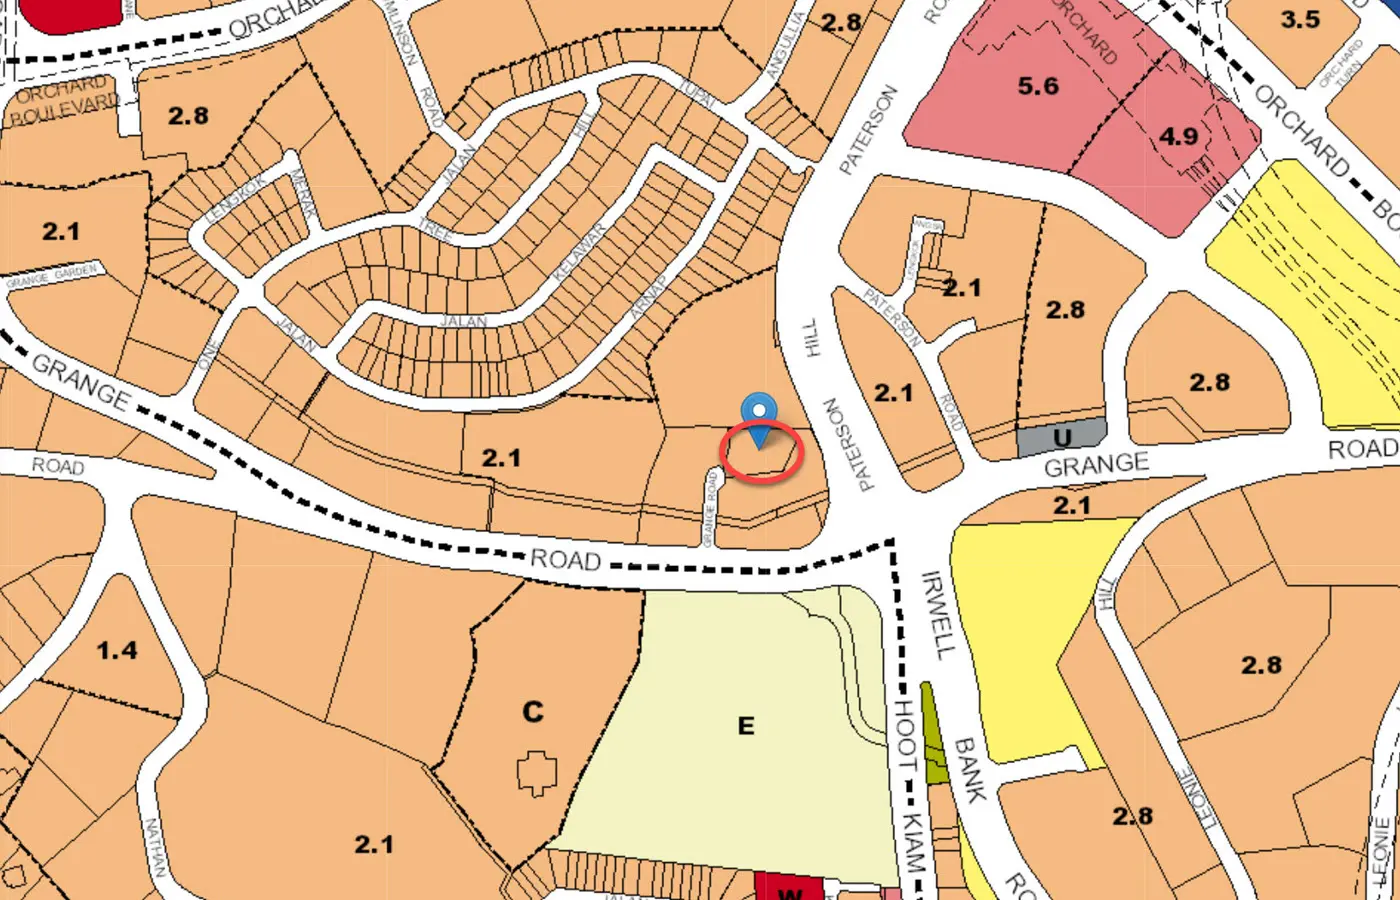 Grange 1866 - URA Master Plan Map